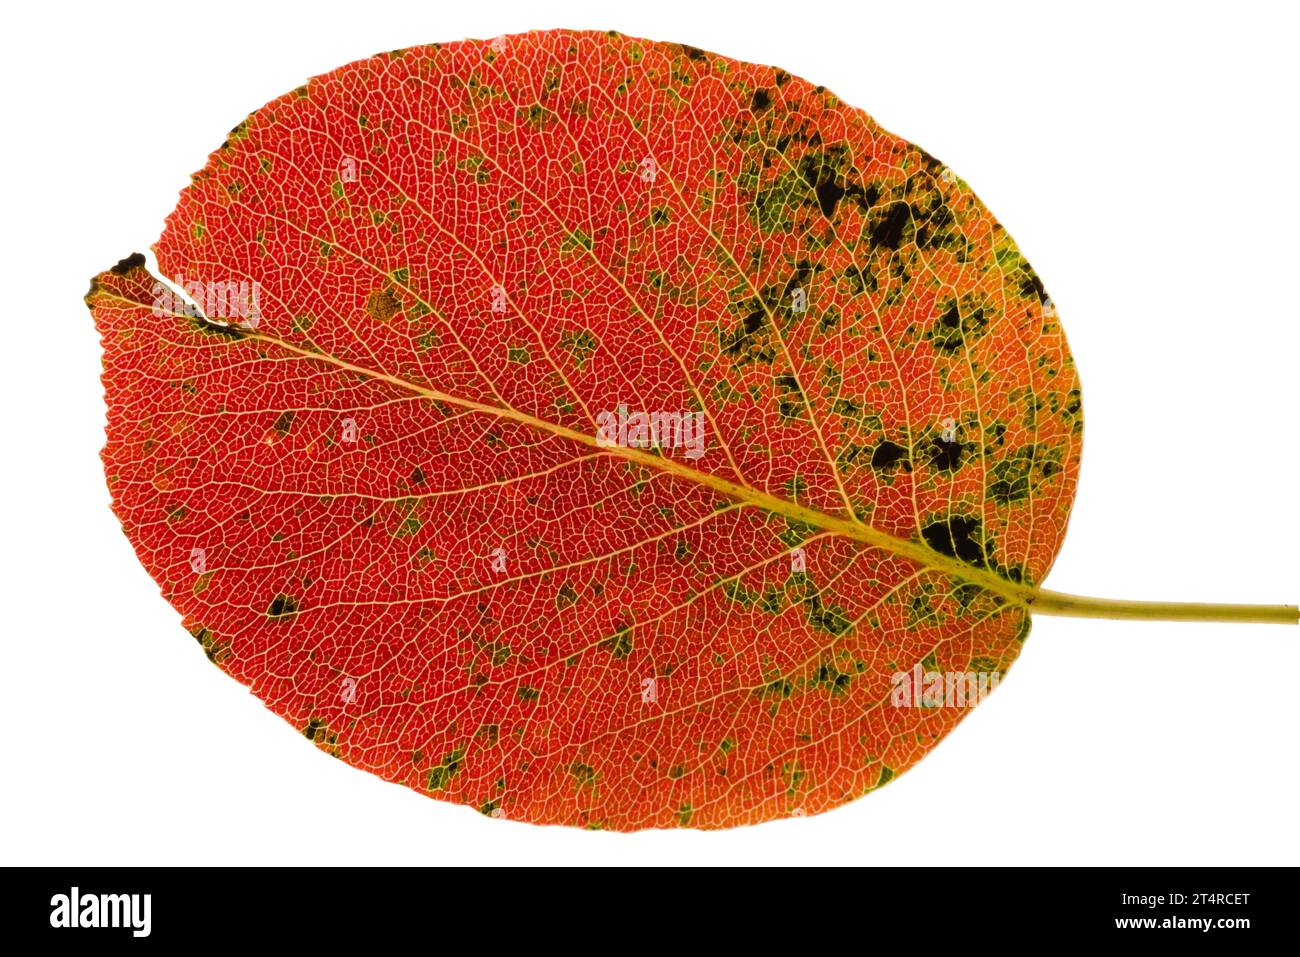 Buntes Herbstlaub. Rote und orangene Nahansicht Birnenbaum-Blattstruktur isoliert auf weißem Hintergrund. Tschechische republik Natur im oktober. Stockfoto